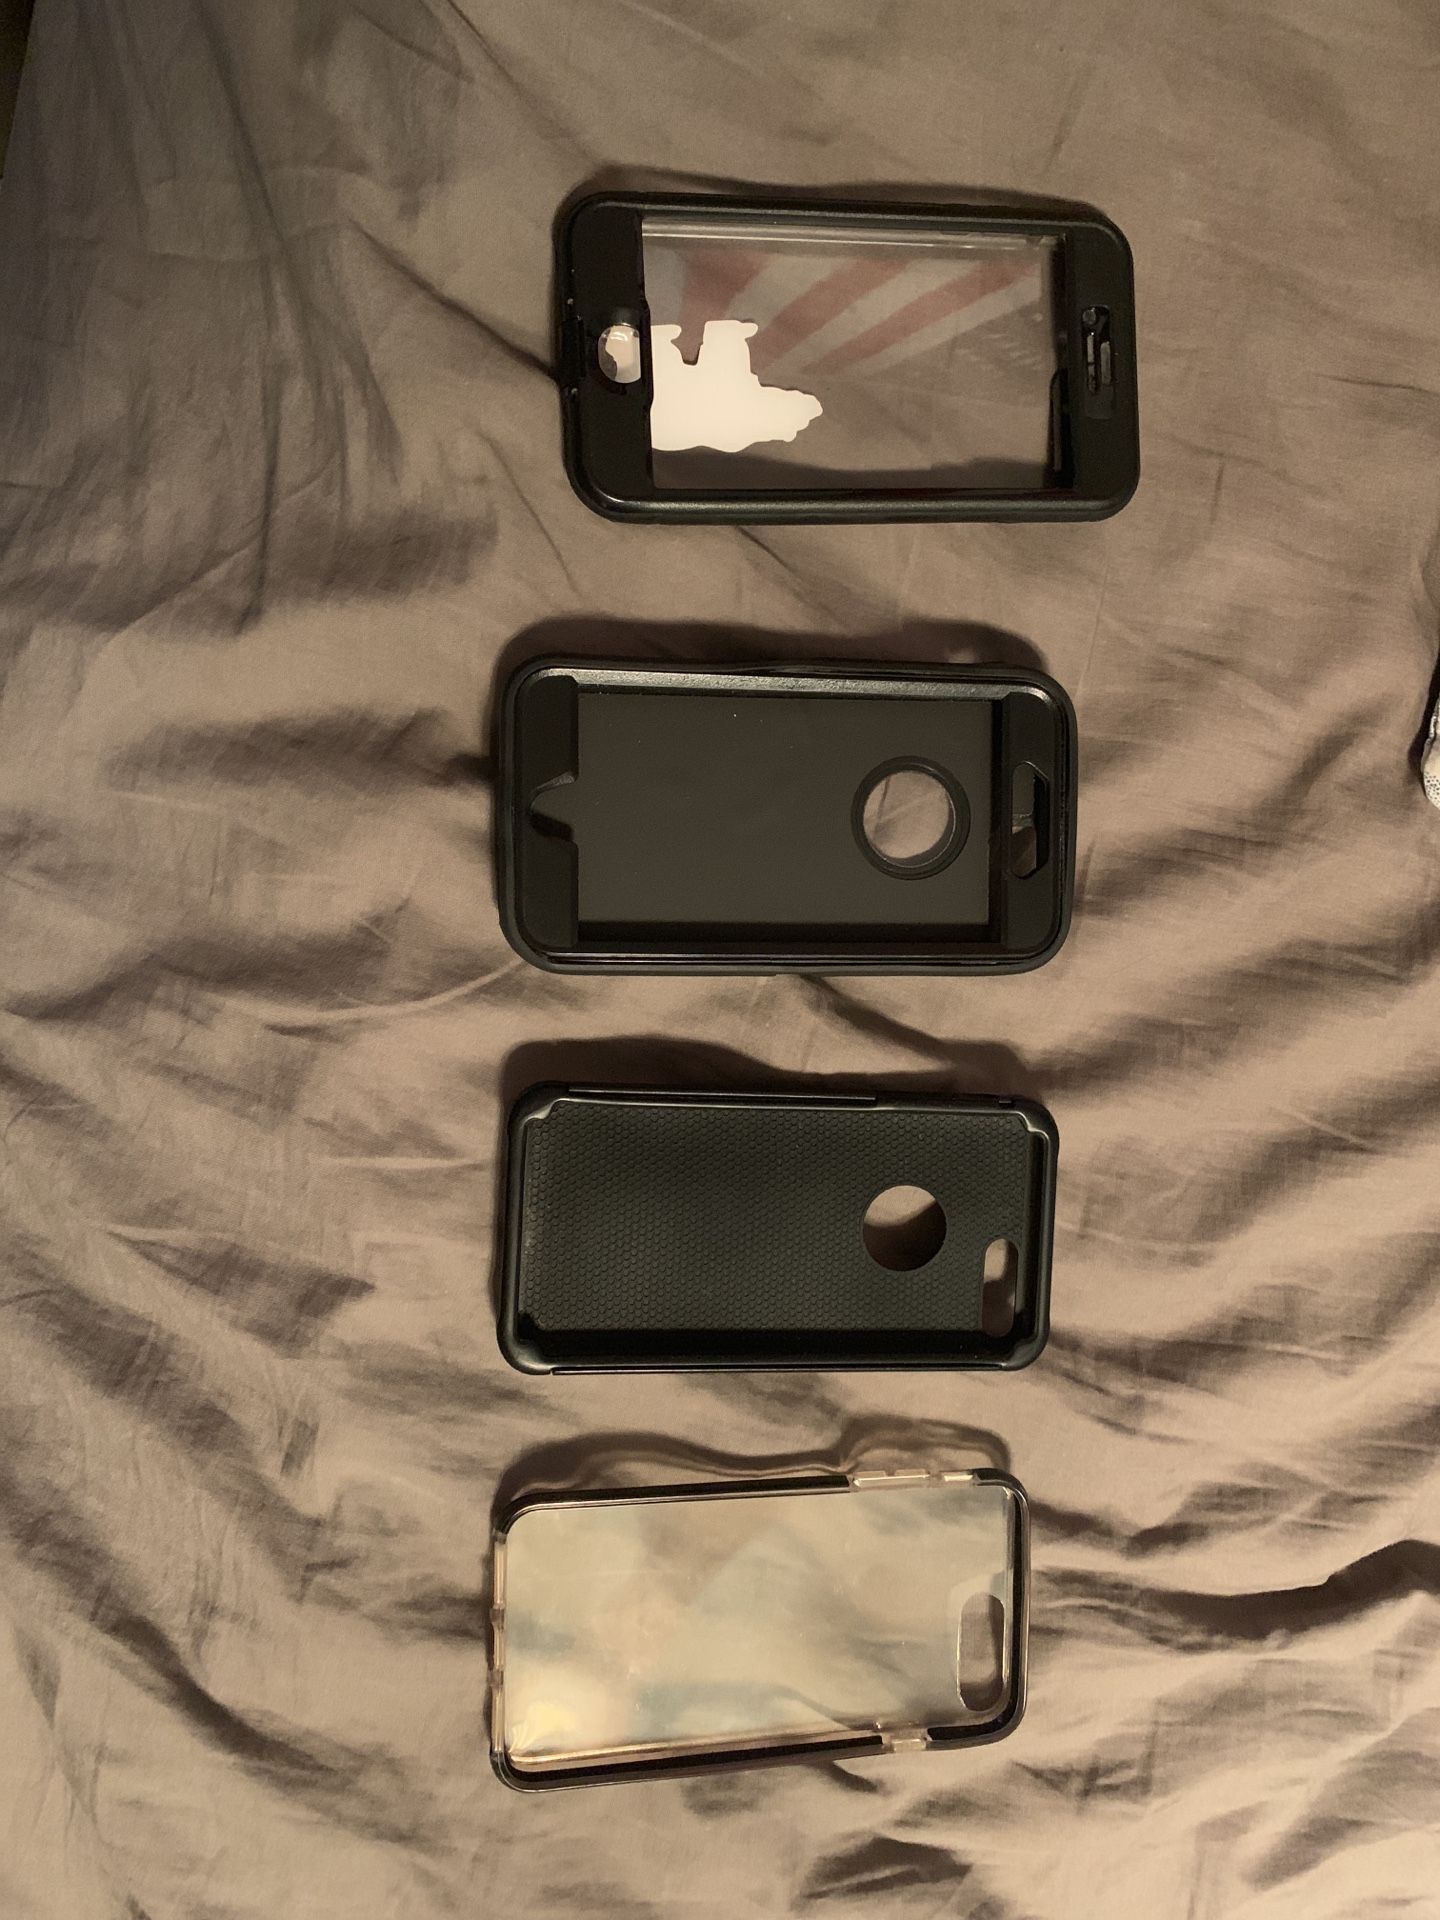 iPhone 7 Plus phone cases